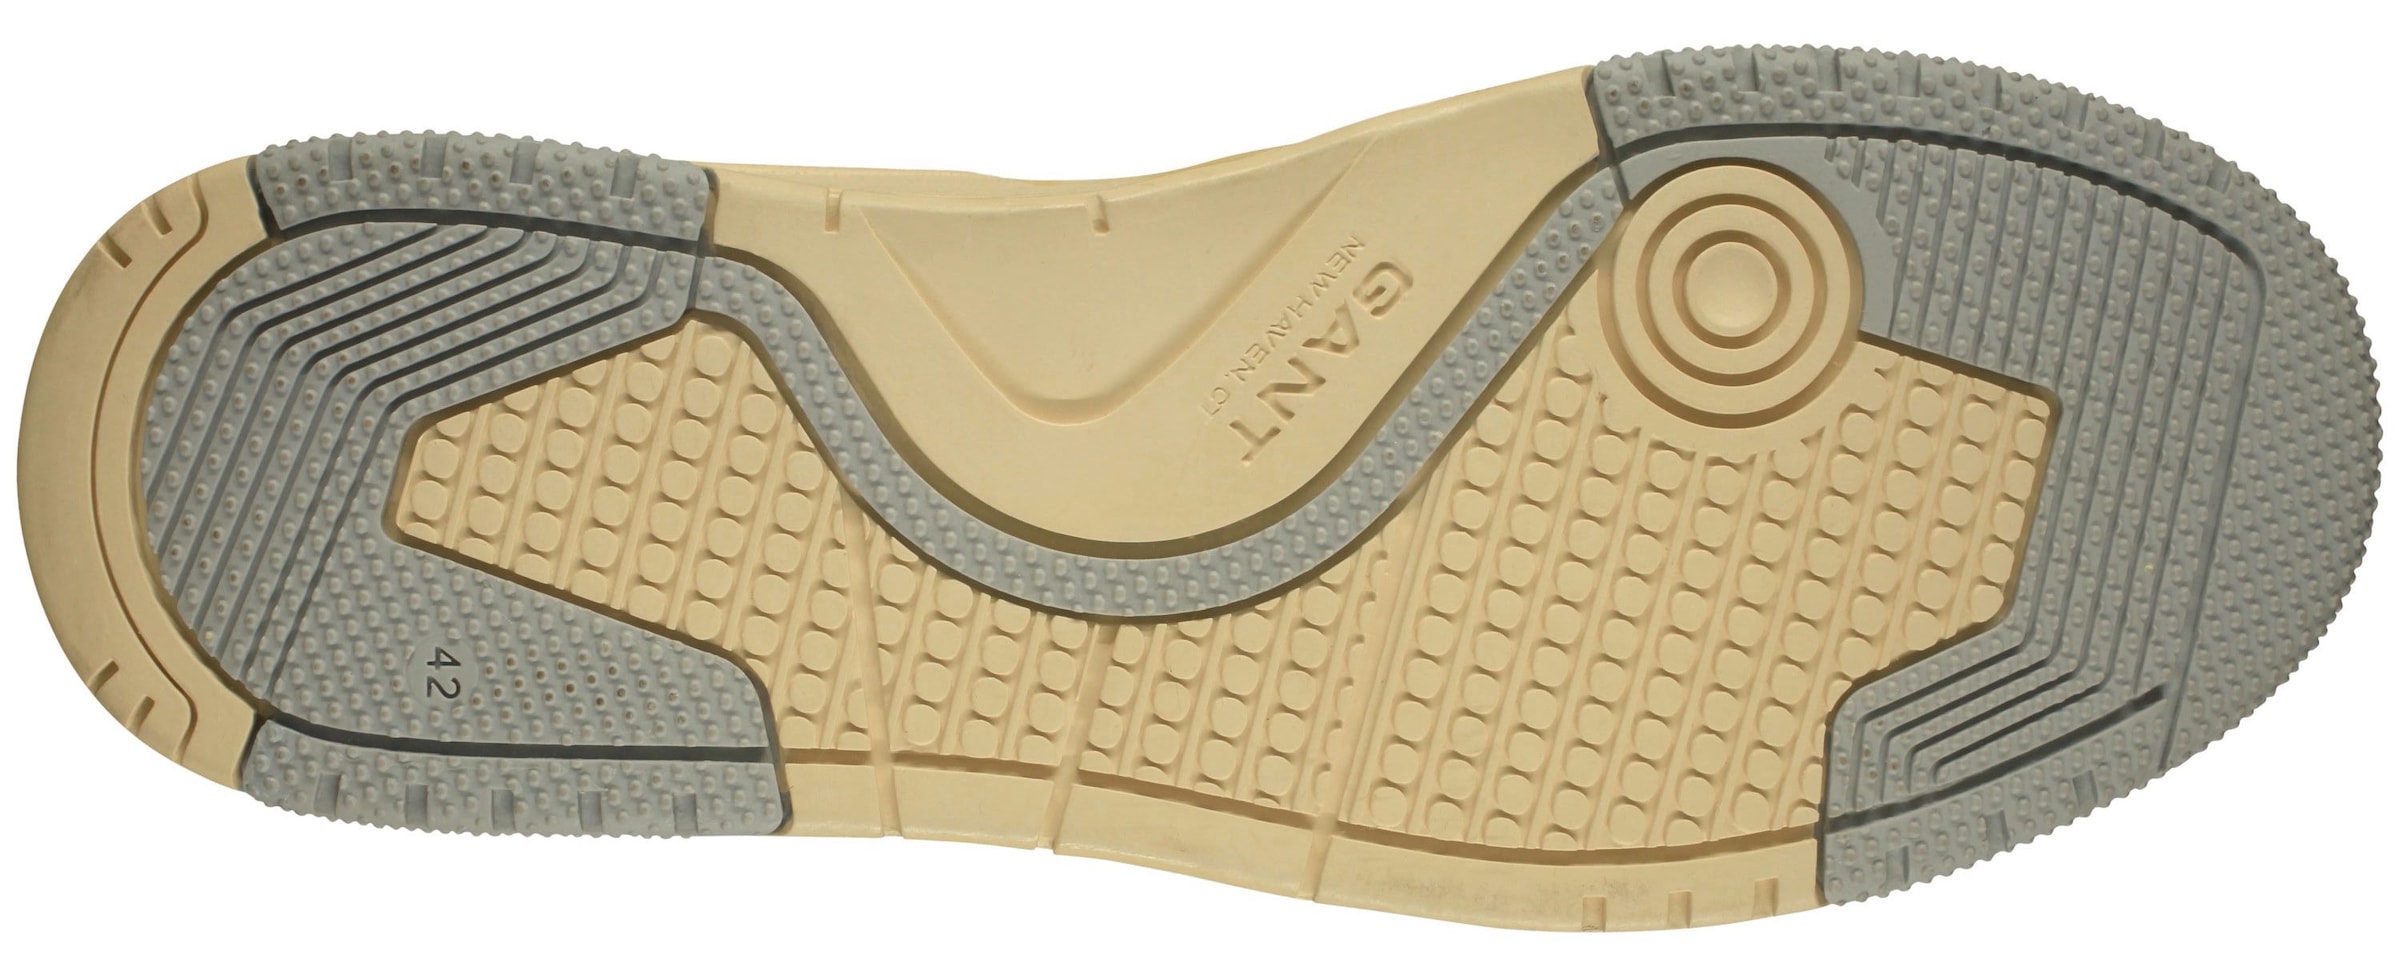 Gant Sneaker »Brookpal«, mit großer Logoverzierung, Freizeitschuh, Halbschuh, Schnürschuh